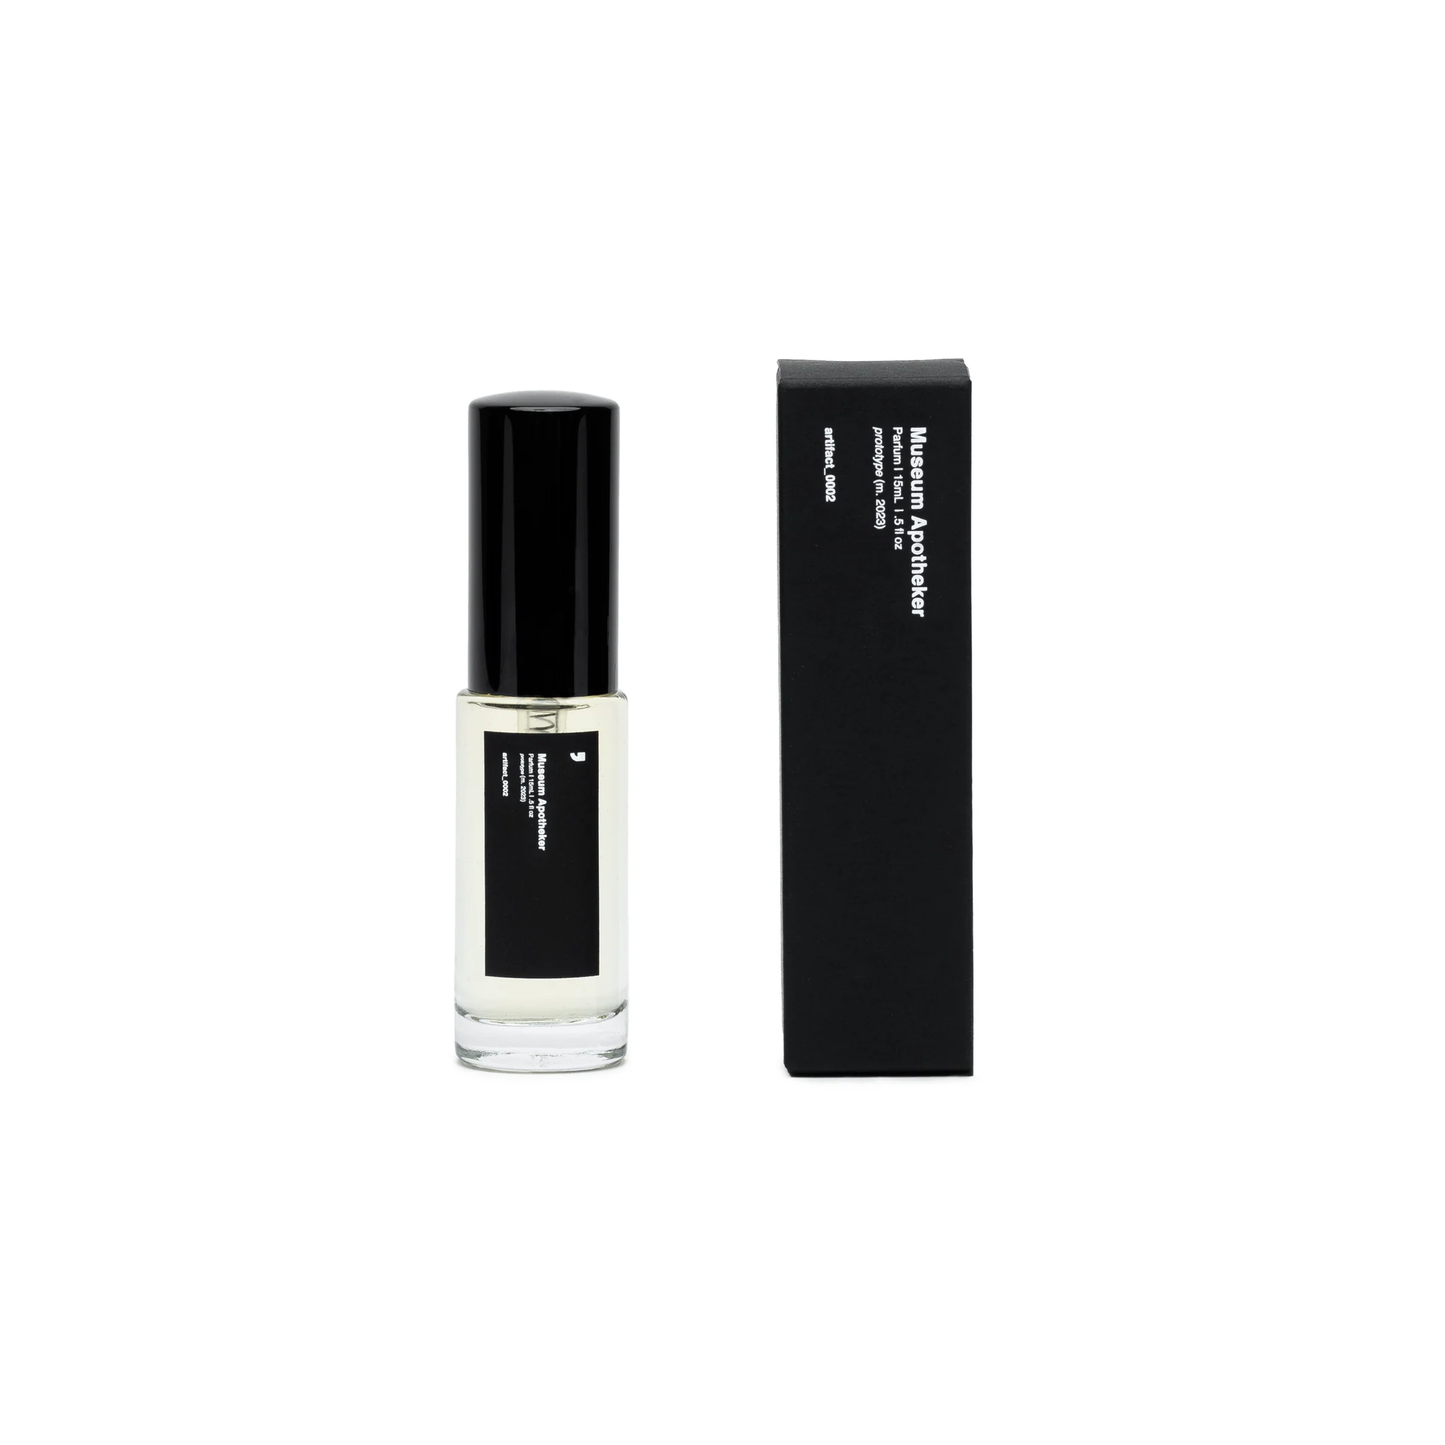 Artifact_002 Parfum 15mL